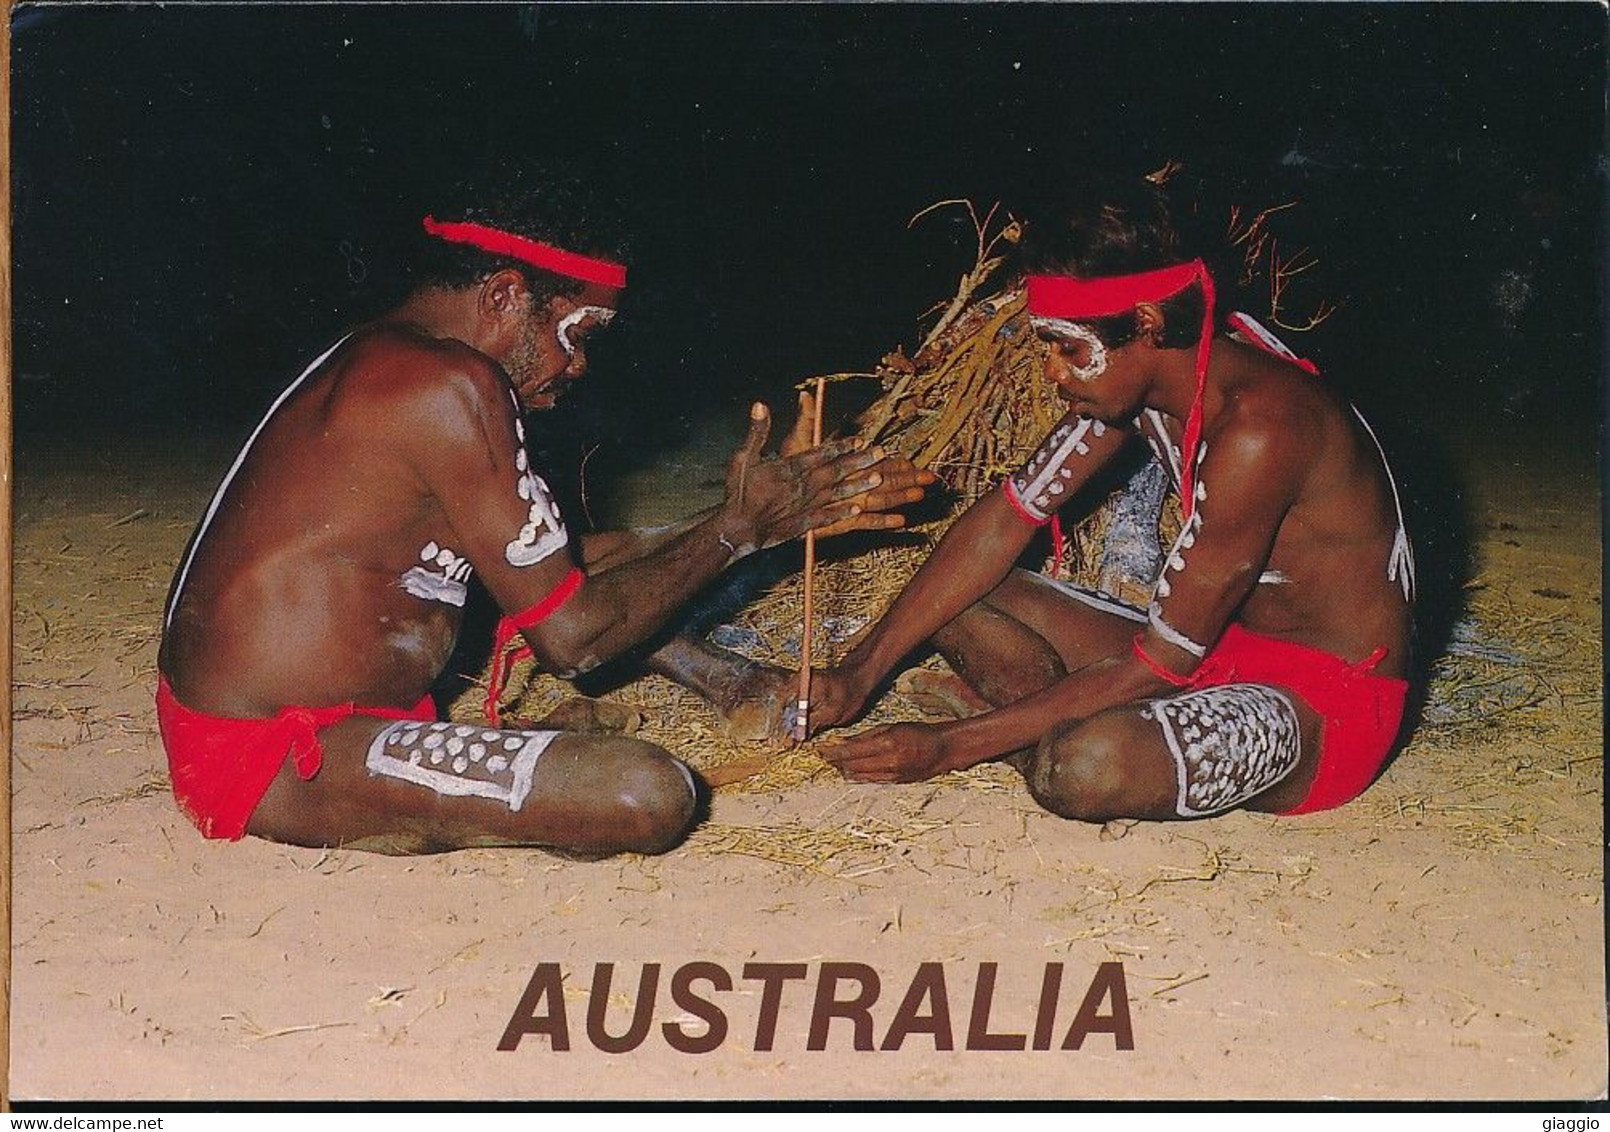 °°° GF863 - AUSTRALIA - AUSTRALIAN ABORIGINES - 1996 With Stamps °°° - Aborigines